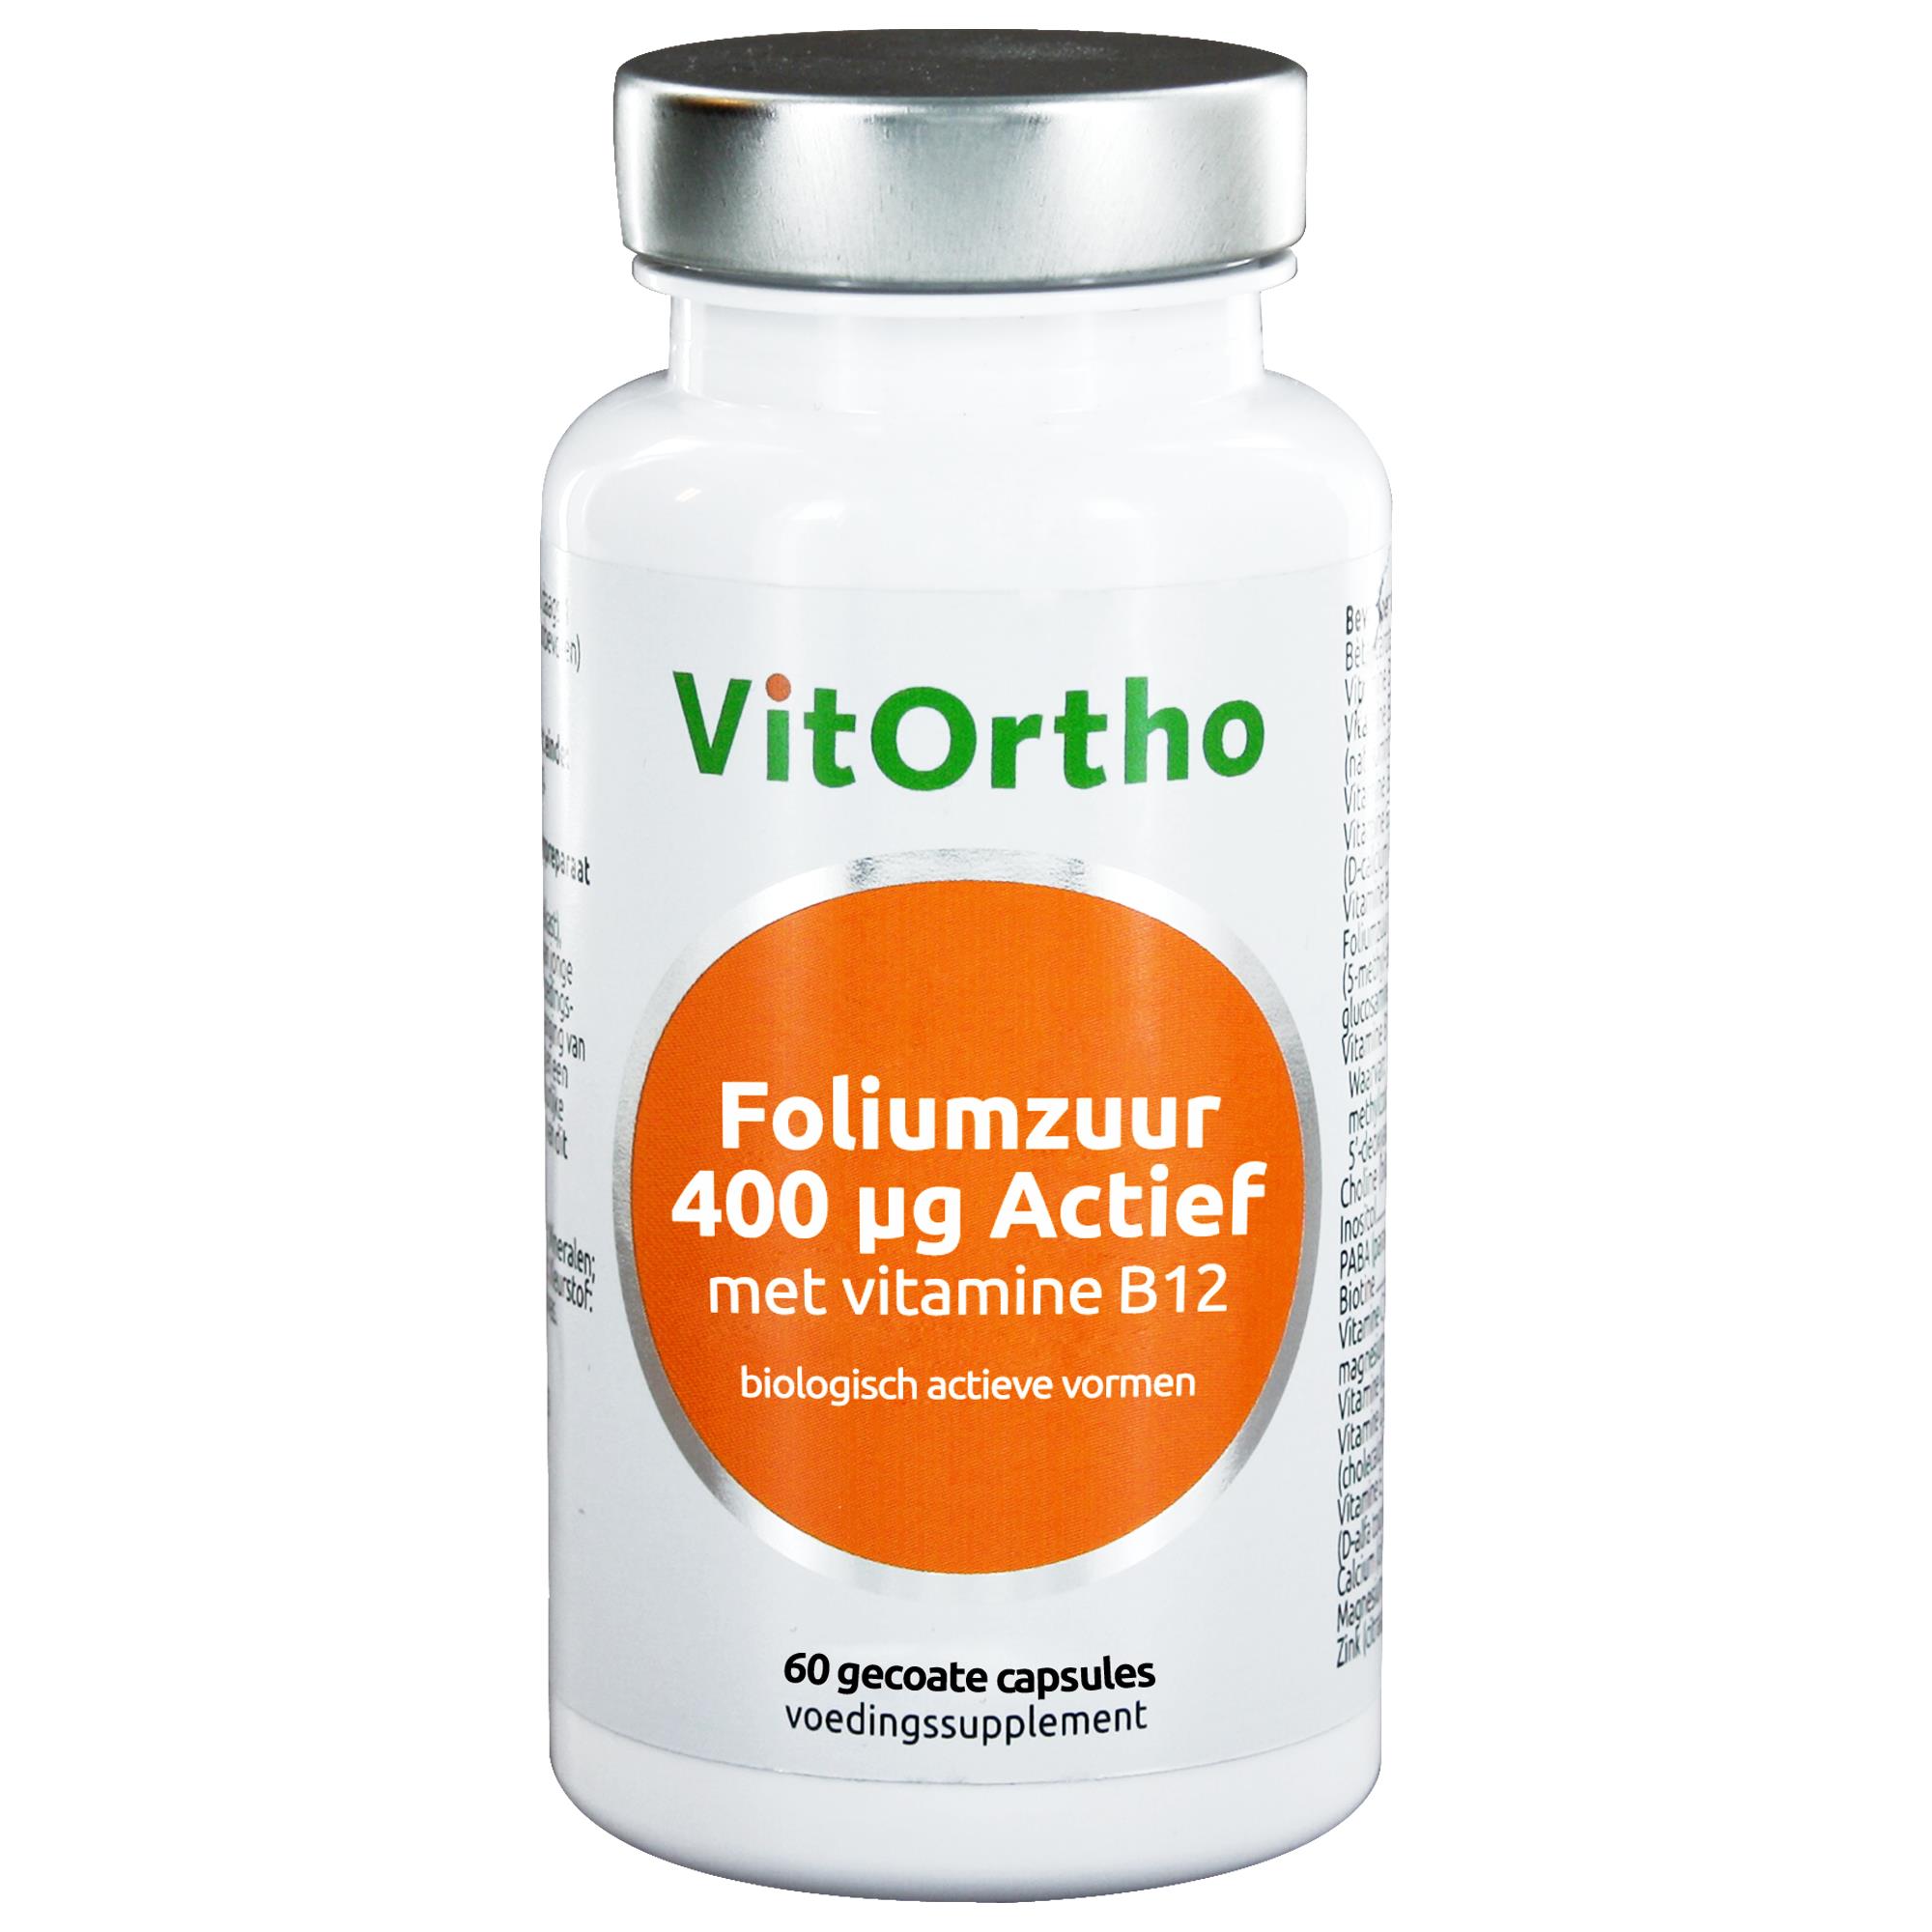 Foliumzuur (400 g actief met vitamine B12) - 60 tab